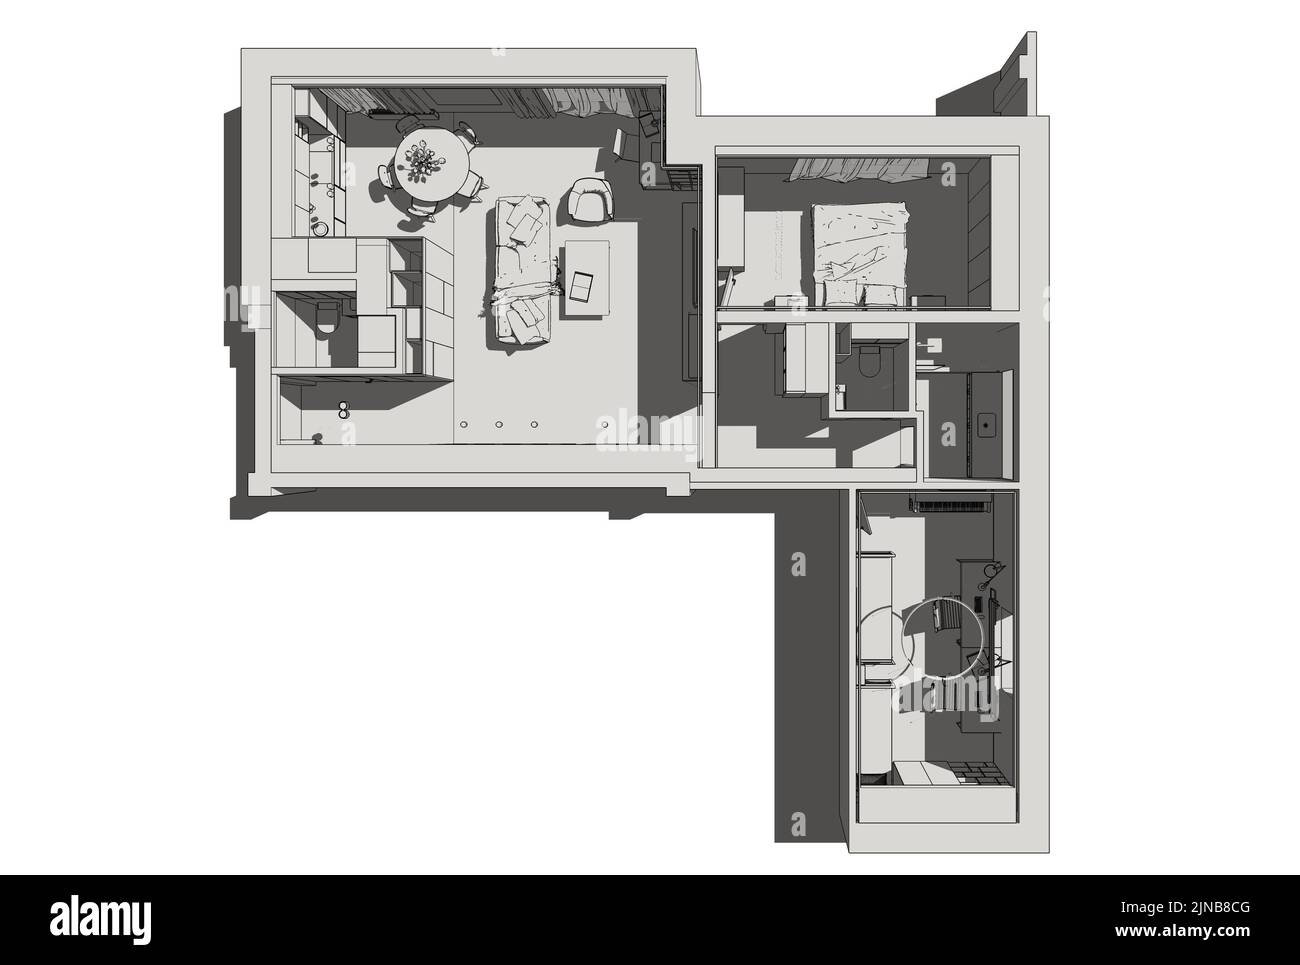 Abbildung des Innenraums. Planen. Illustration der Wohnung im Blaupause-Stil. Stockfoto